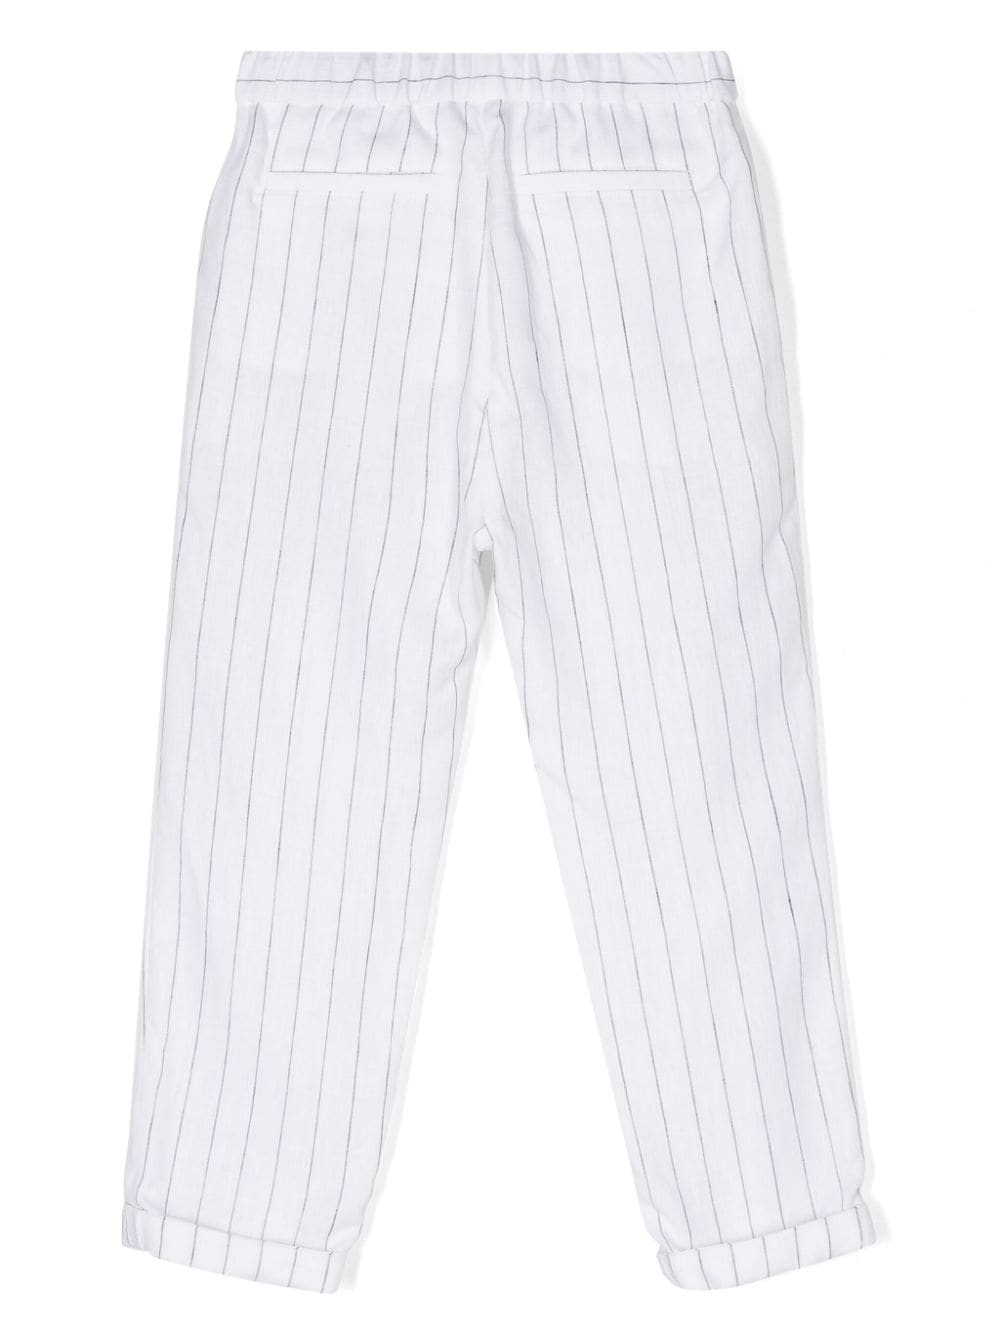 Pantaloni bambino grigio/bianco